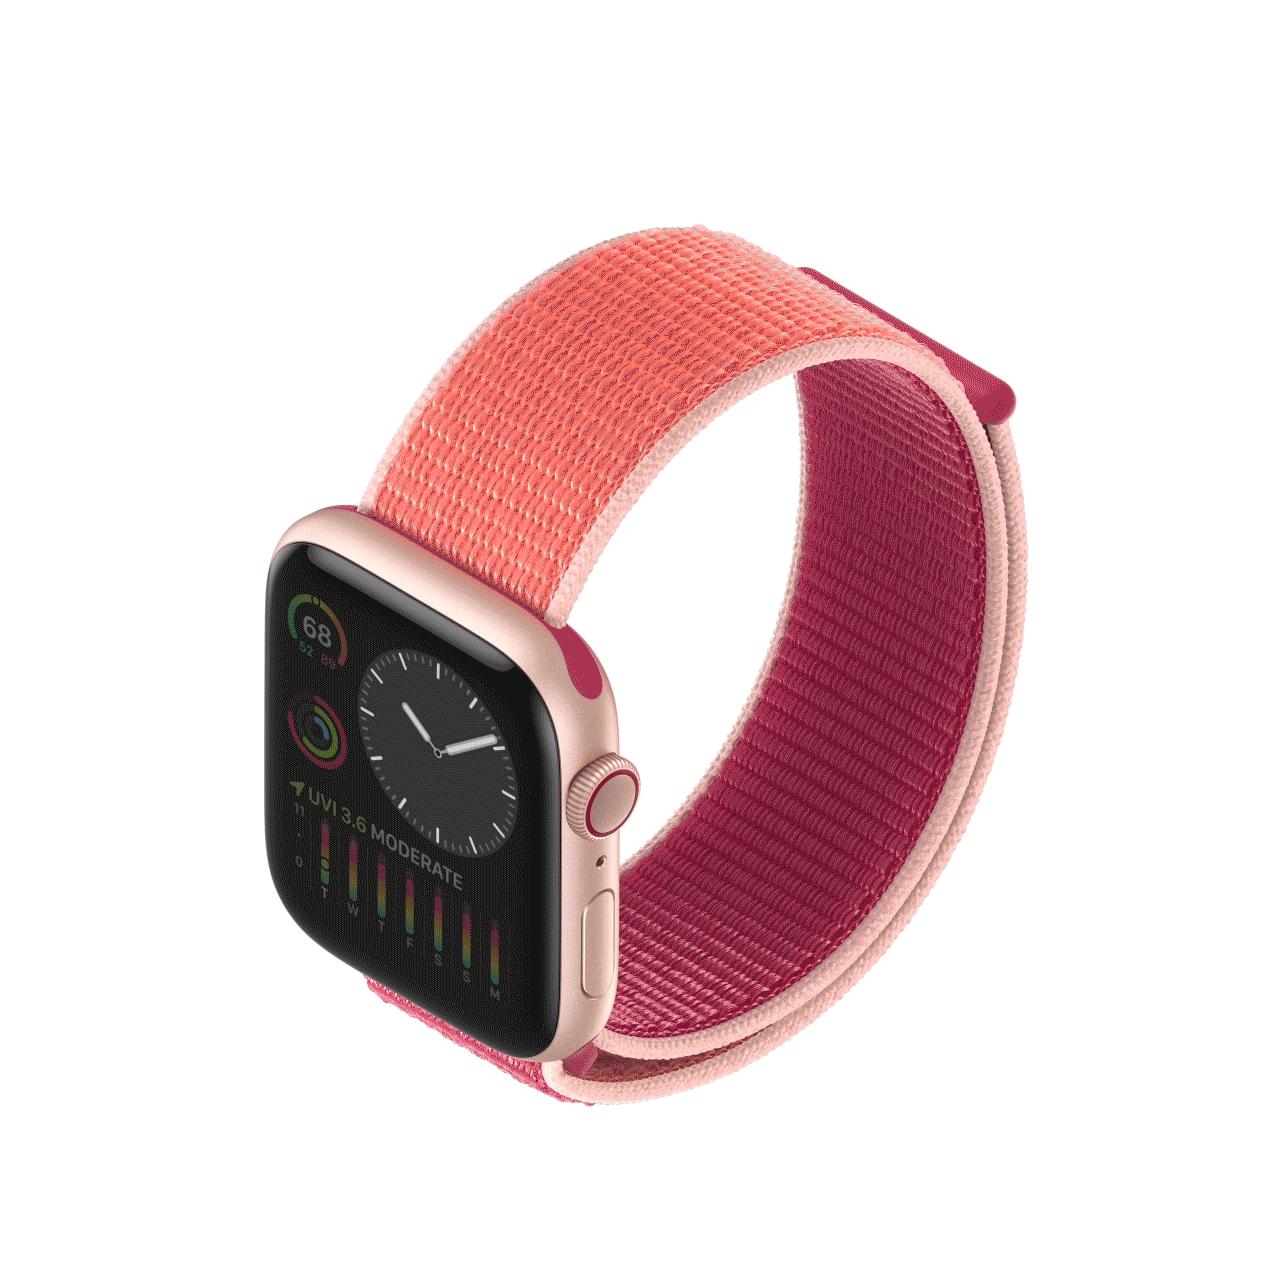 Apple Watch Series 5: Smartwatch staje się prawdziwym zegarkiem